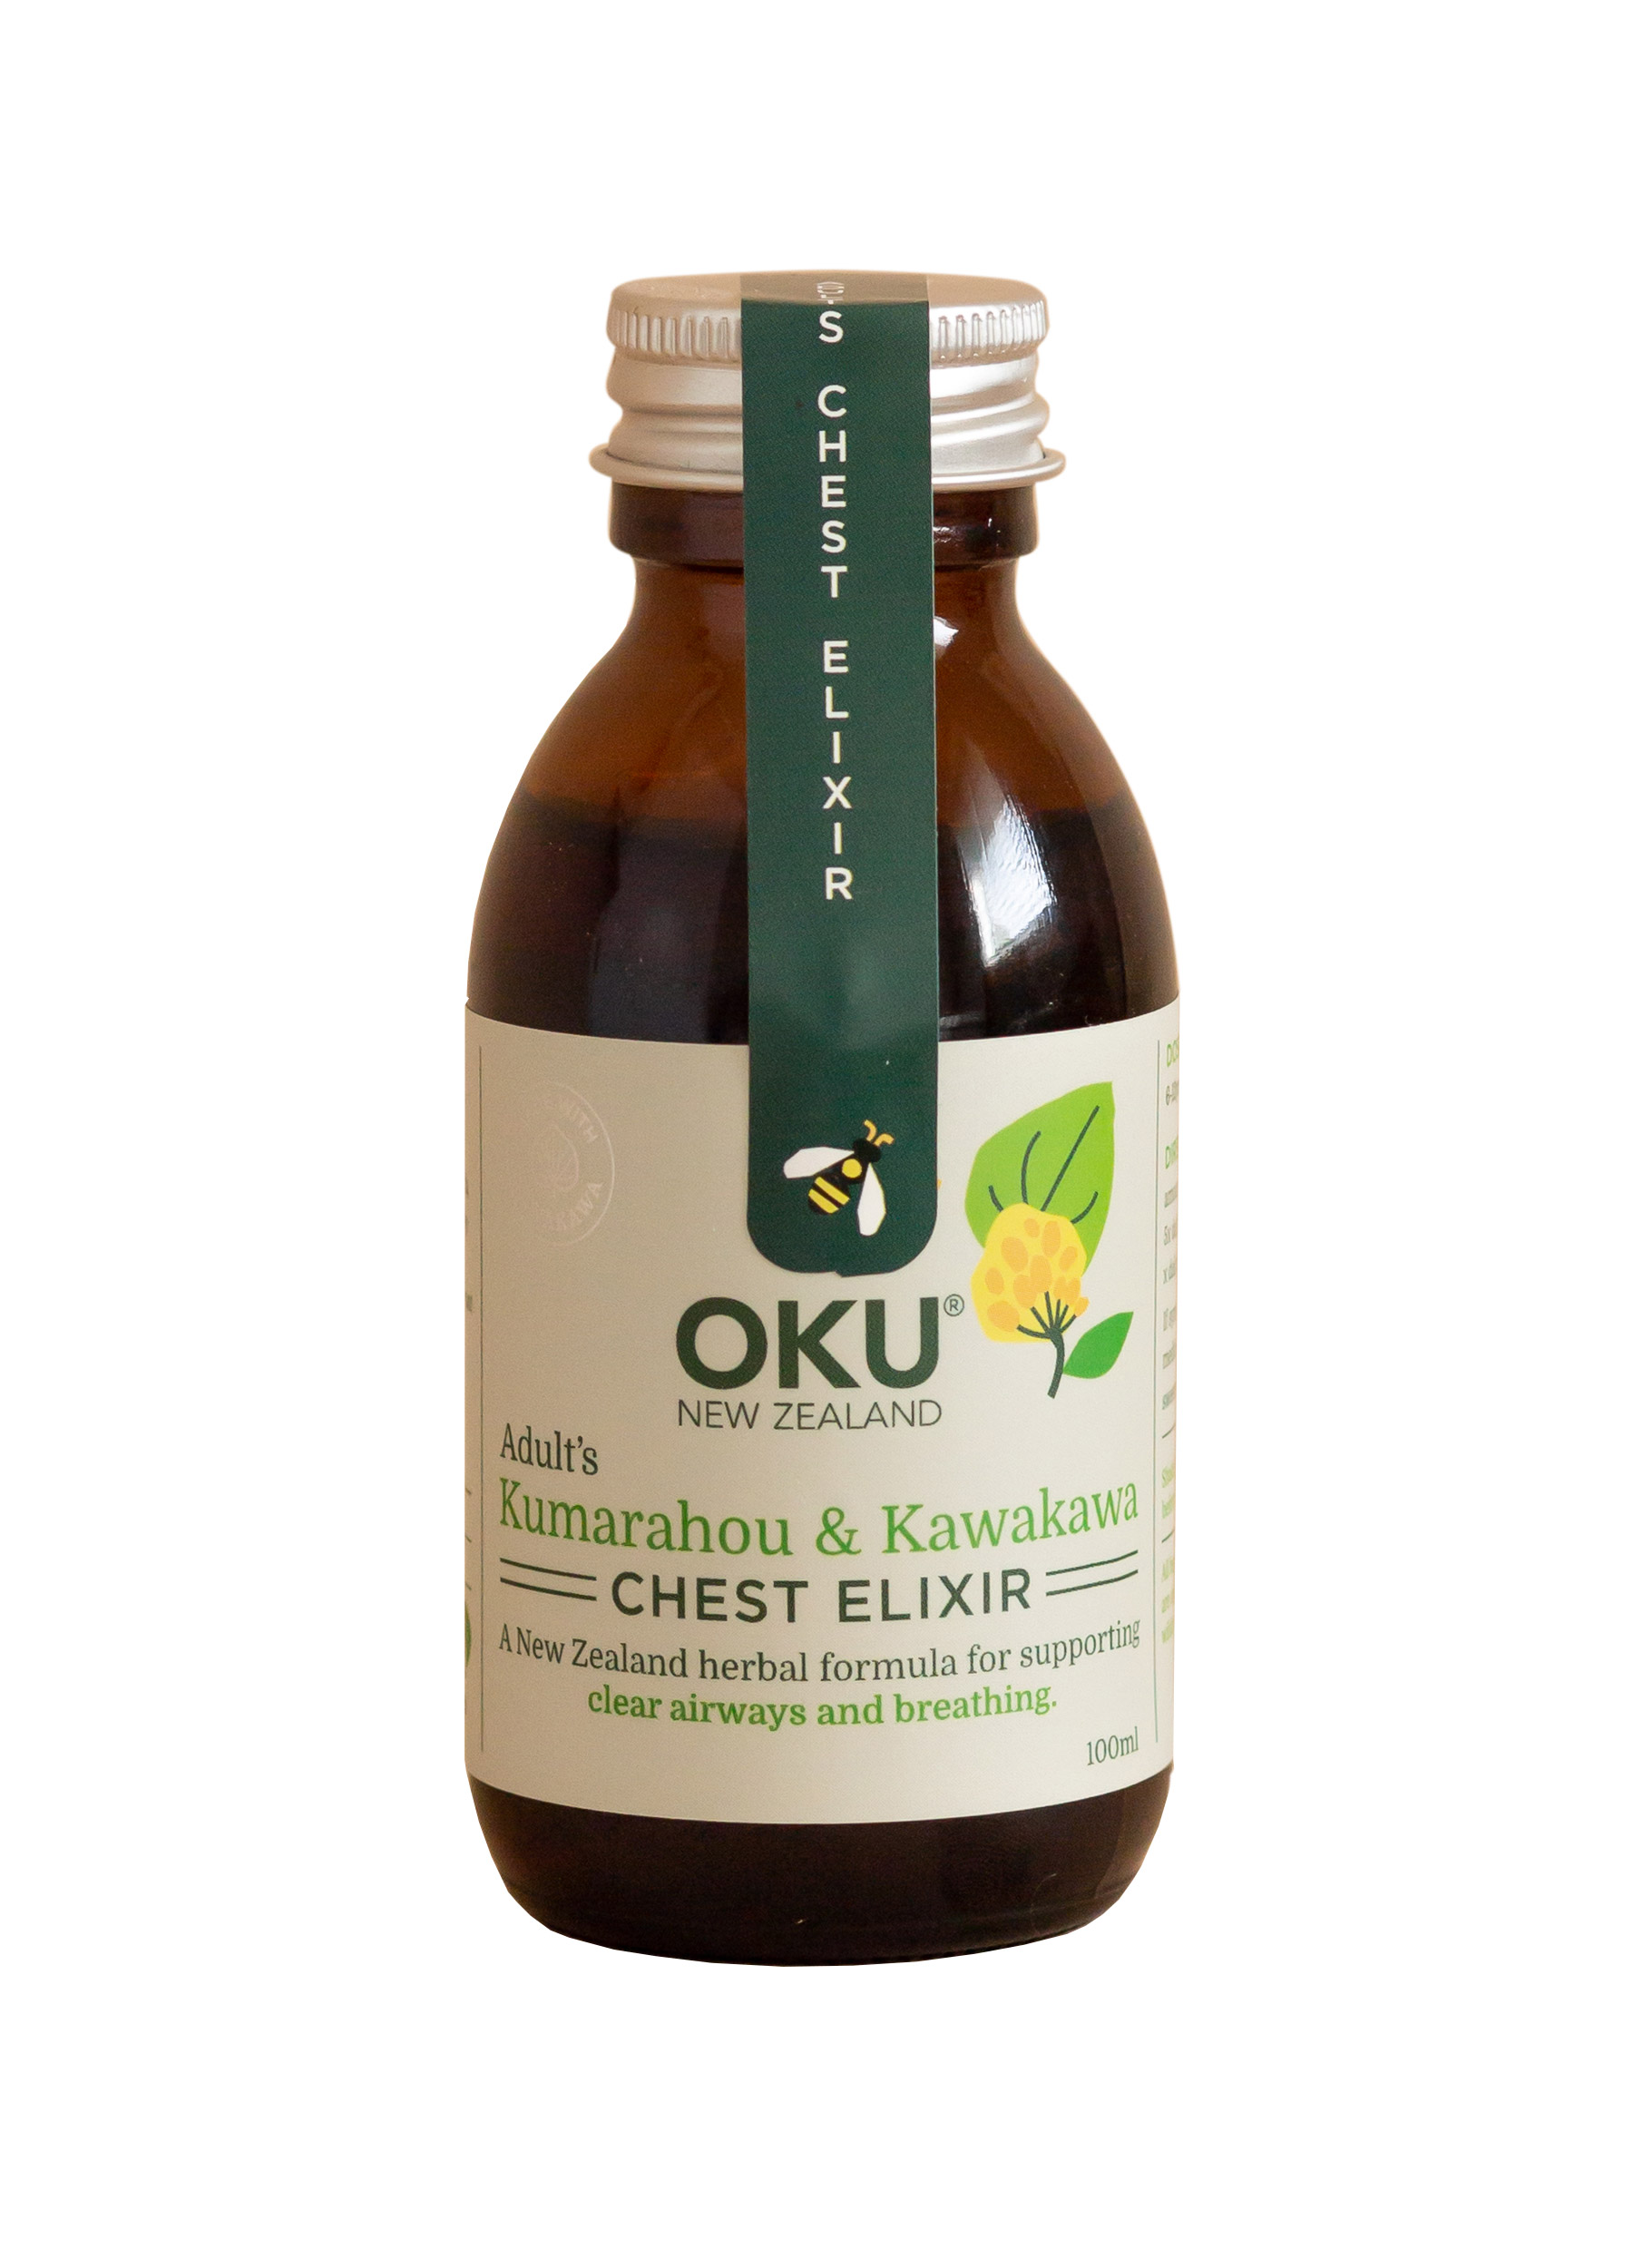 OKU Adult Chest Elixir - Kumarahou & Kawakawa